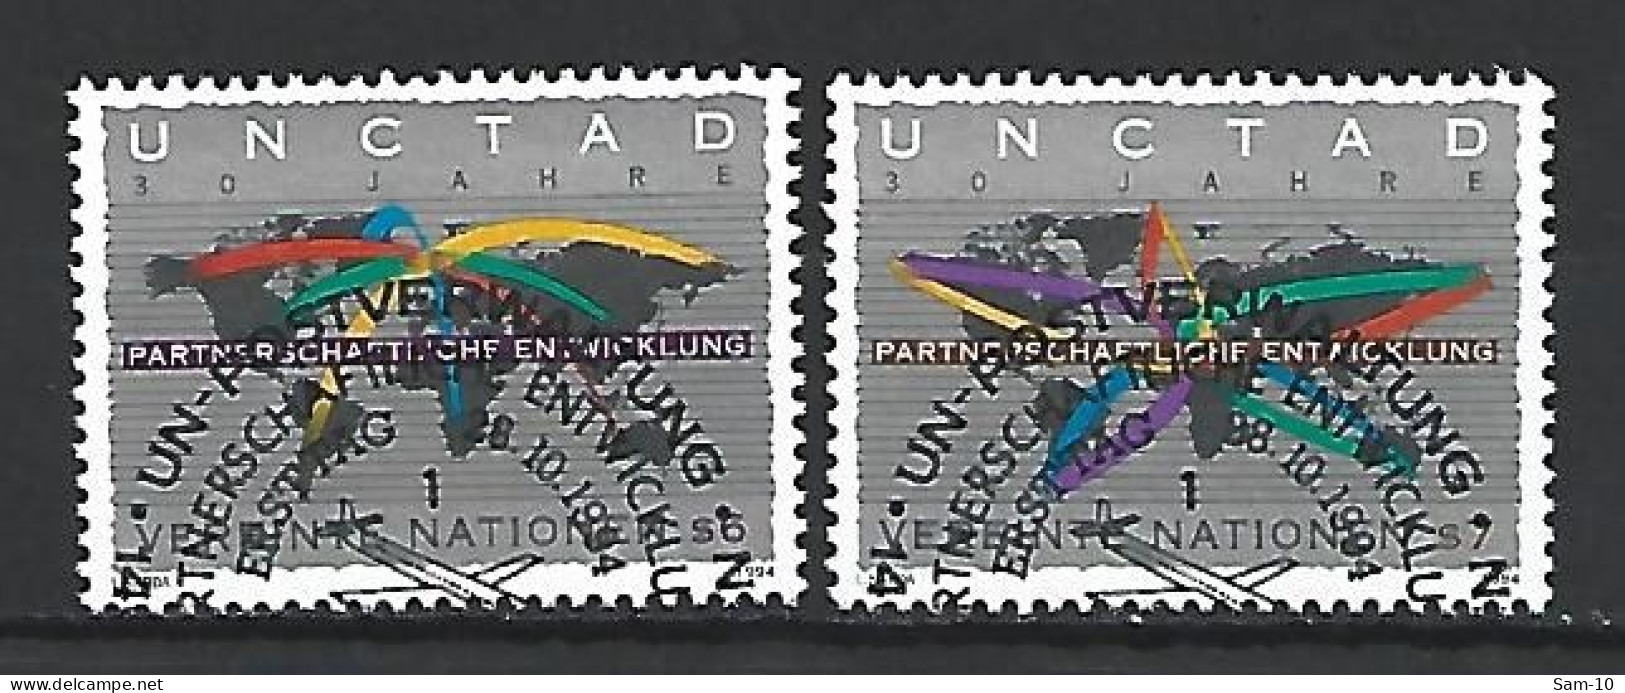 Timbres Nations-Unies Vienne Oblitéré N 196 / 197 - Oblitérés